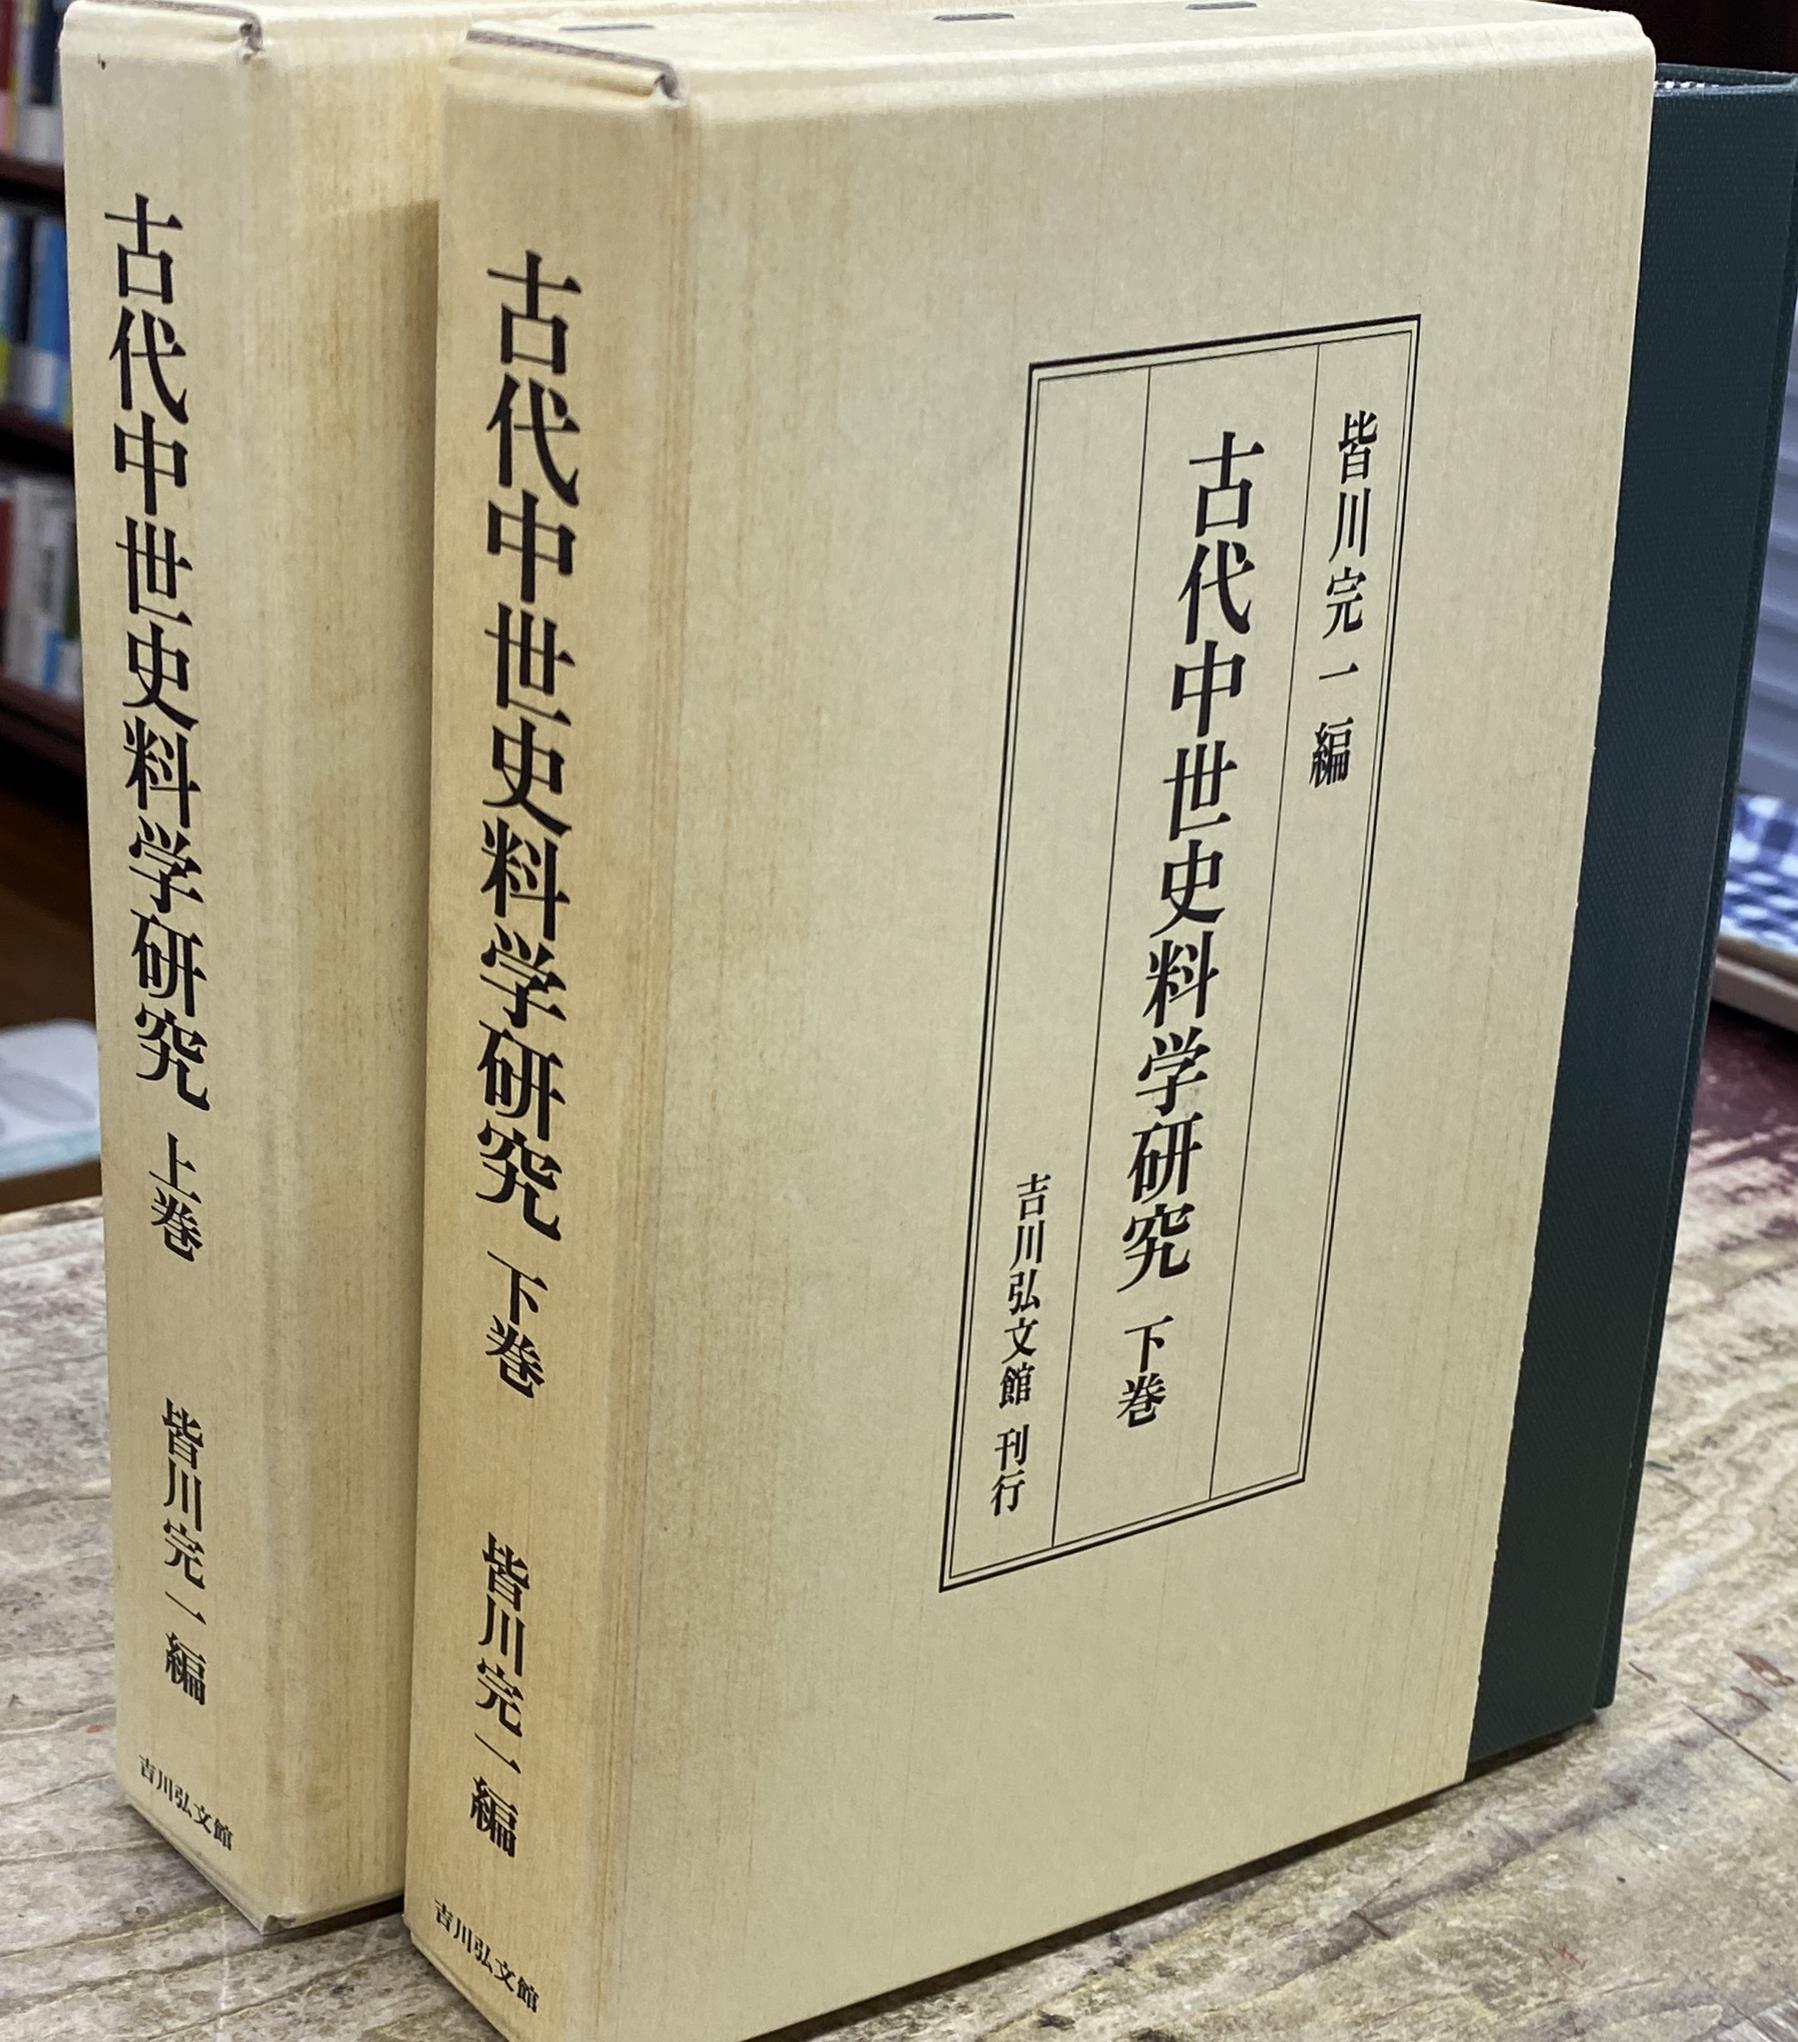 北海道開拓精神の形成 榎本守恵 | 古本よみた屋 おじいさんの本、買い 